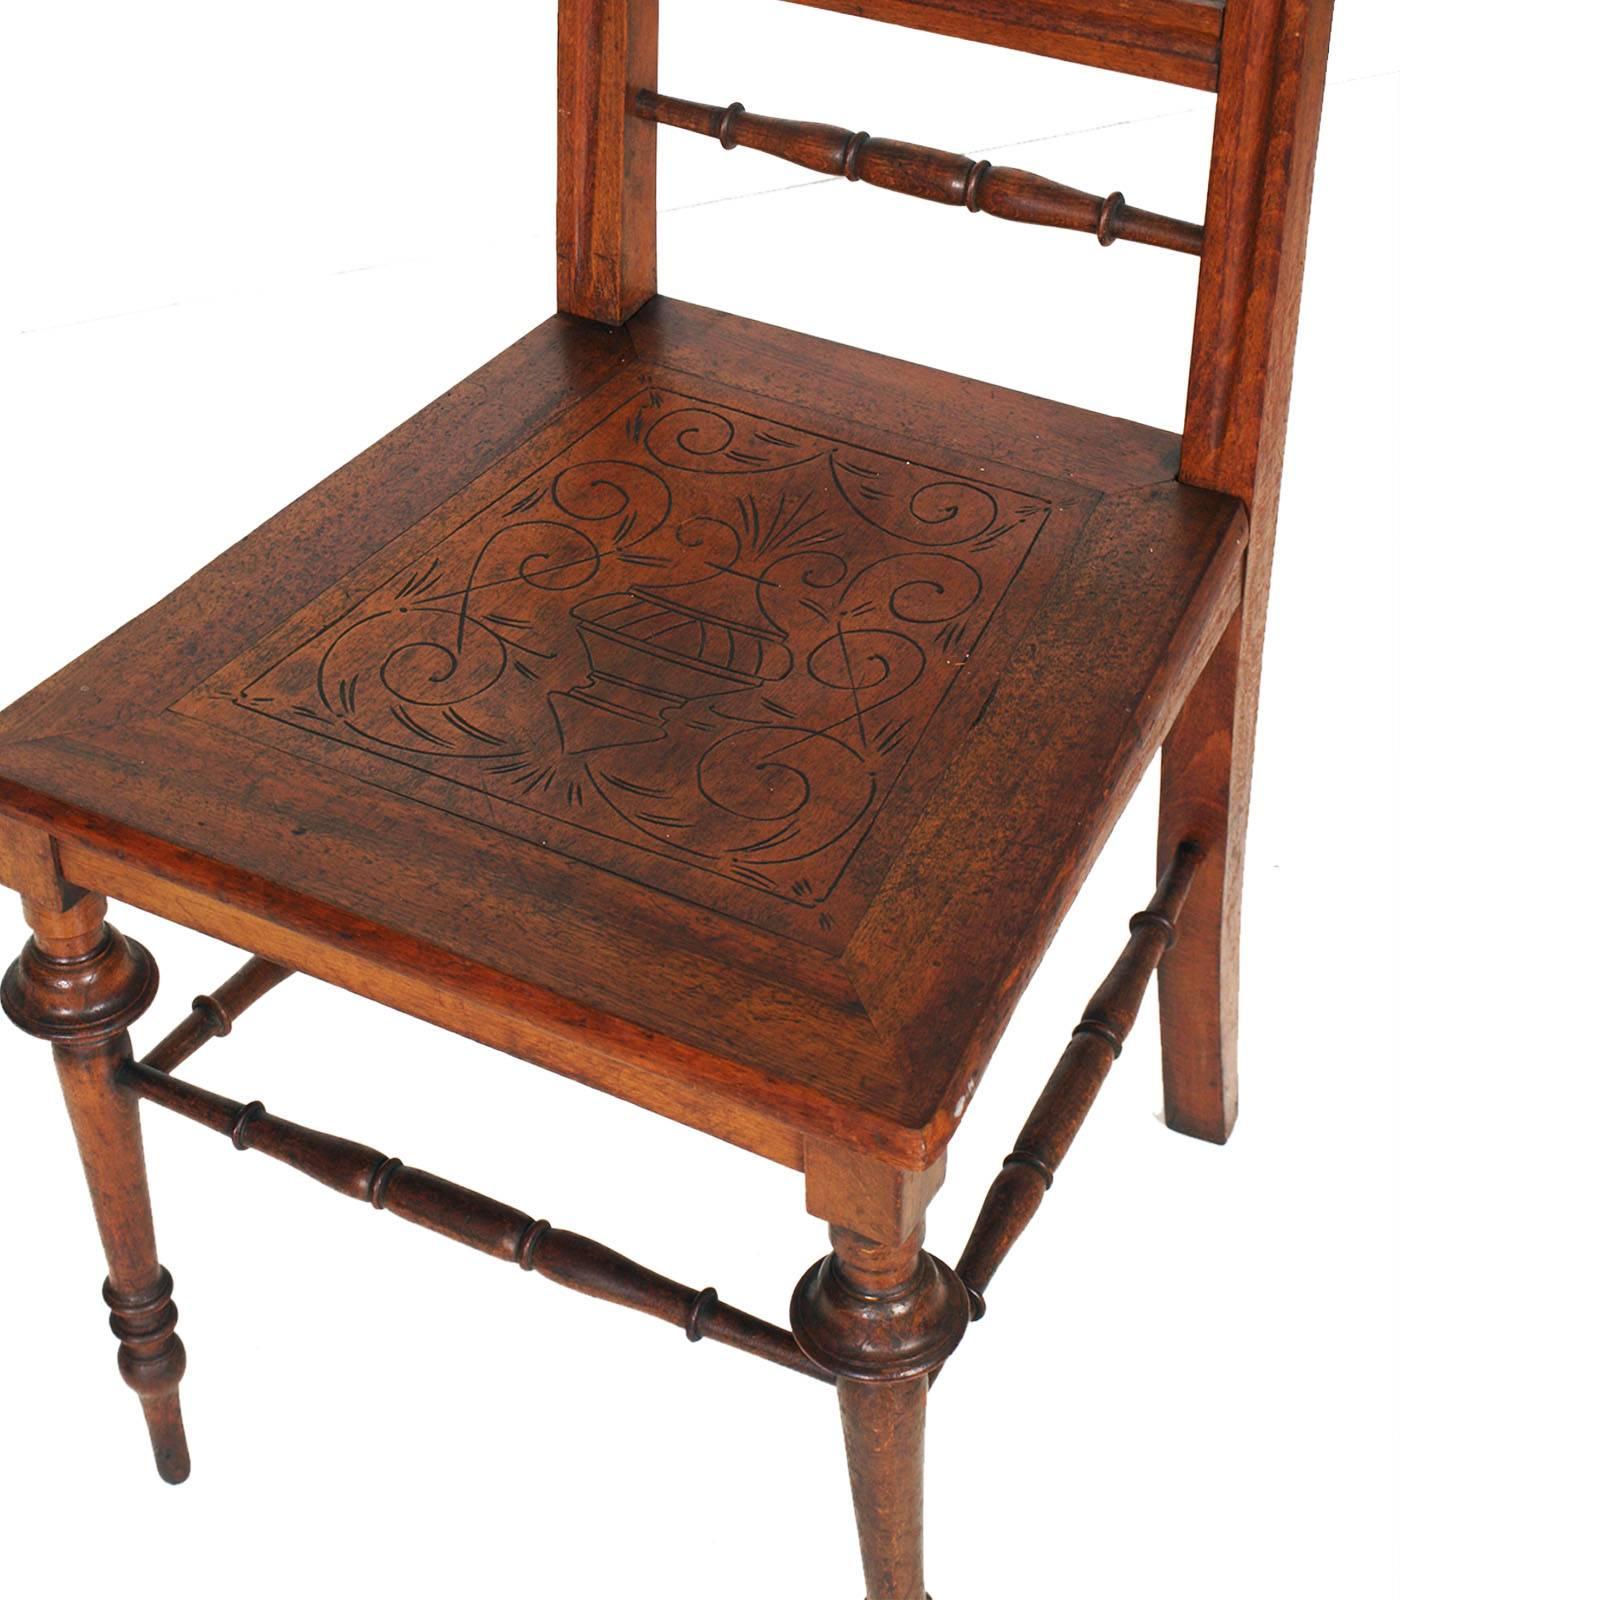 Elégantes chaises d'appoint Chiavarine du milieu du 19e siècle en noyer tourné avec assise sculptée à la main, restaurées et finies à la cire.

Dimensions en cm : H 101\47 x L 45 x P 45.